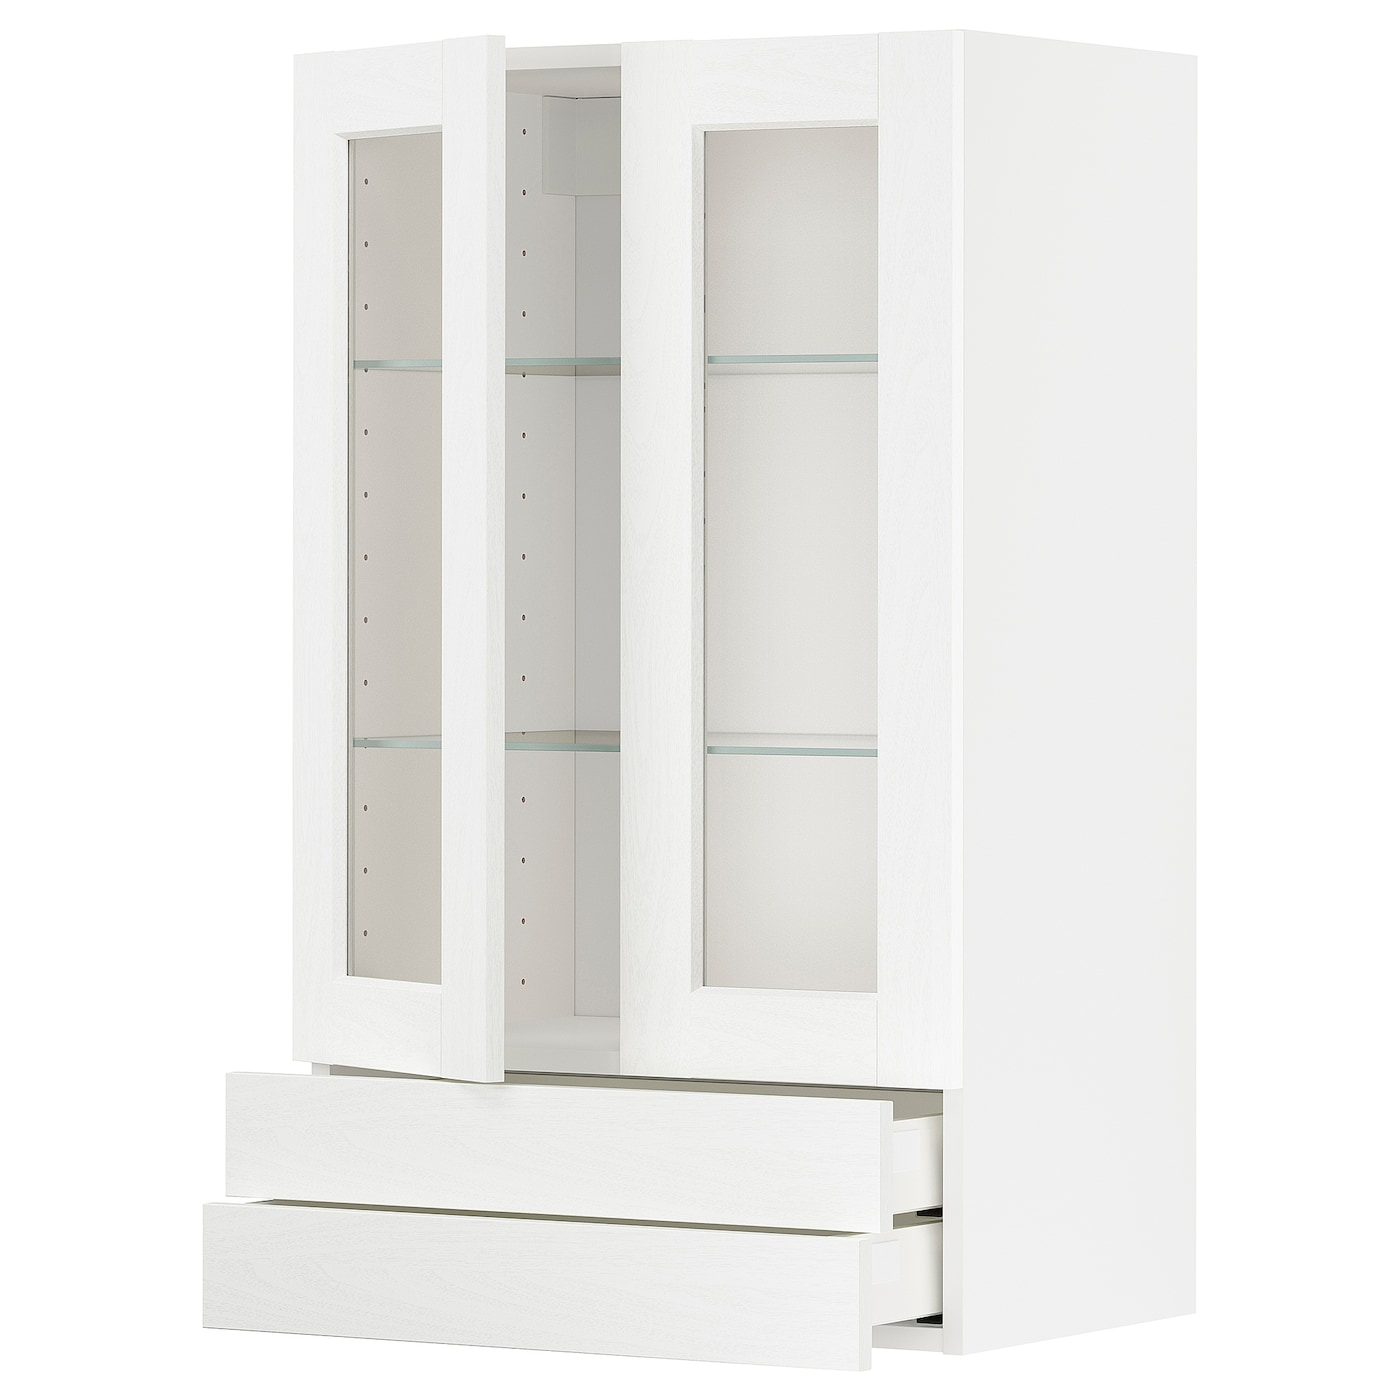 Напольный кухонный шкаф с ящиками и дверцами - IKEA METOD MAXIMERA, 100x38,9x60см, белый, МЕТОД МАКСИМЕРА ИКЕА